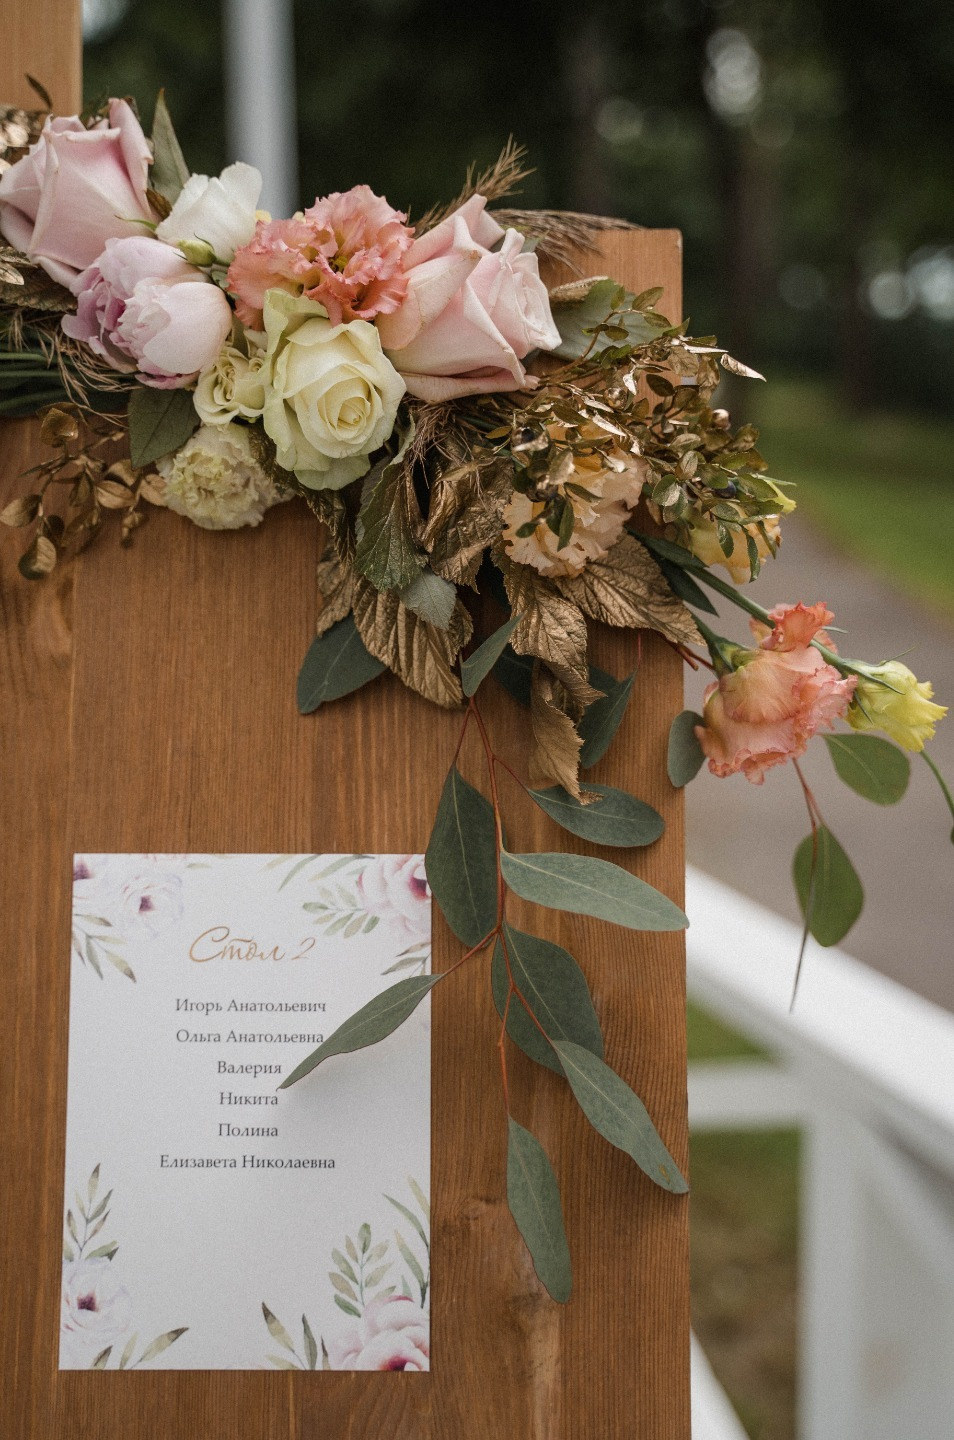 ФОТО ИЗ СТАТЬИ: Семейная память: романтичная свадьба у Финского залива